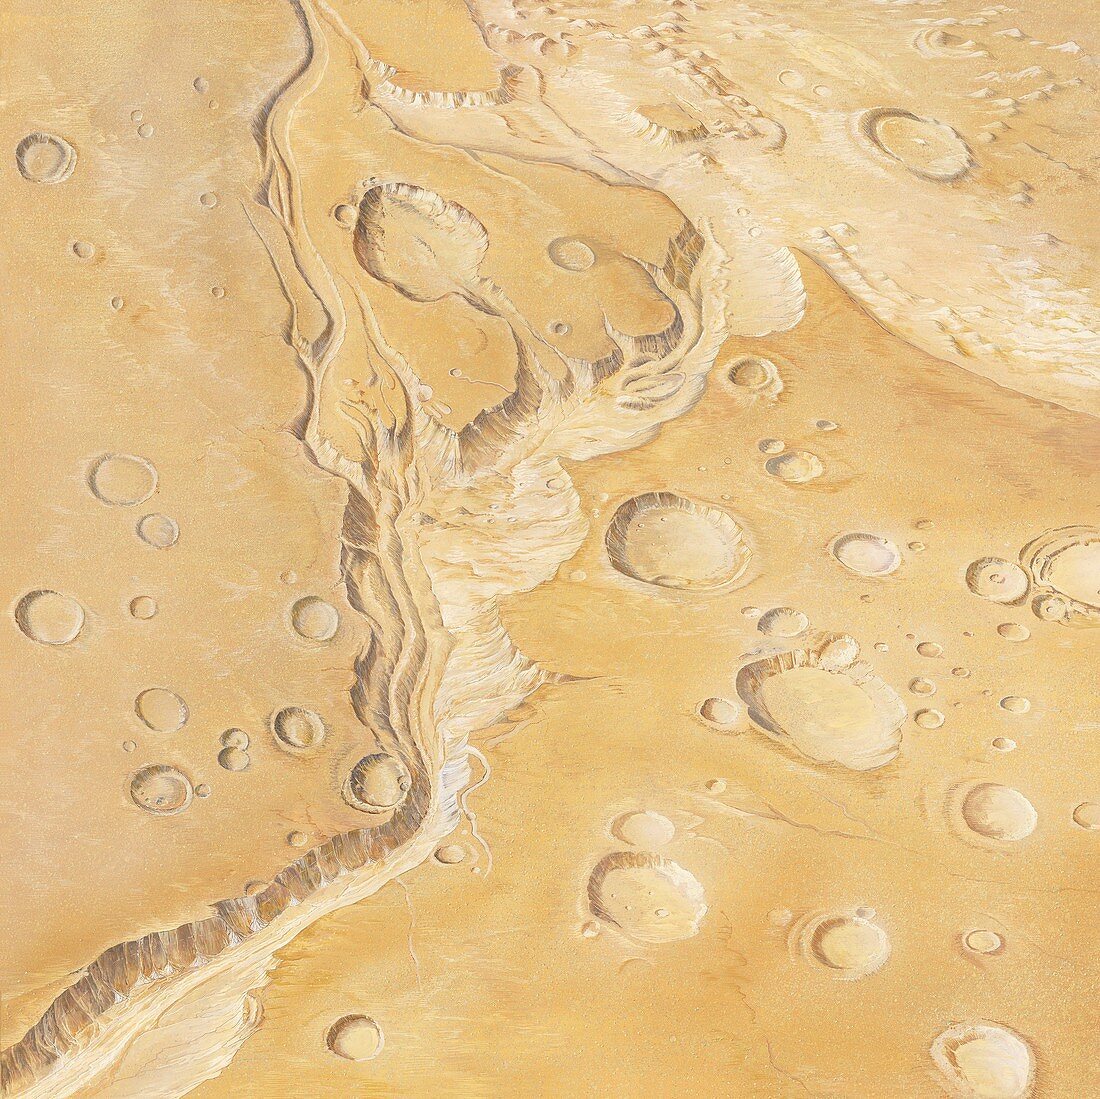 Martian landscape,artwork